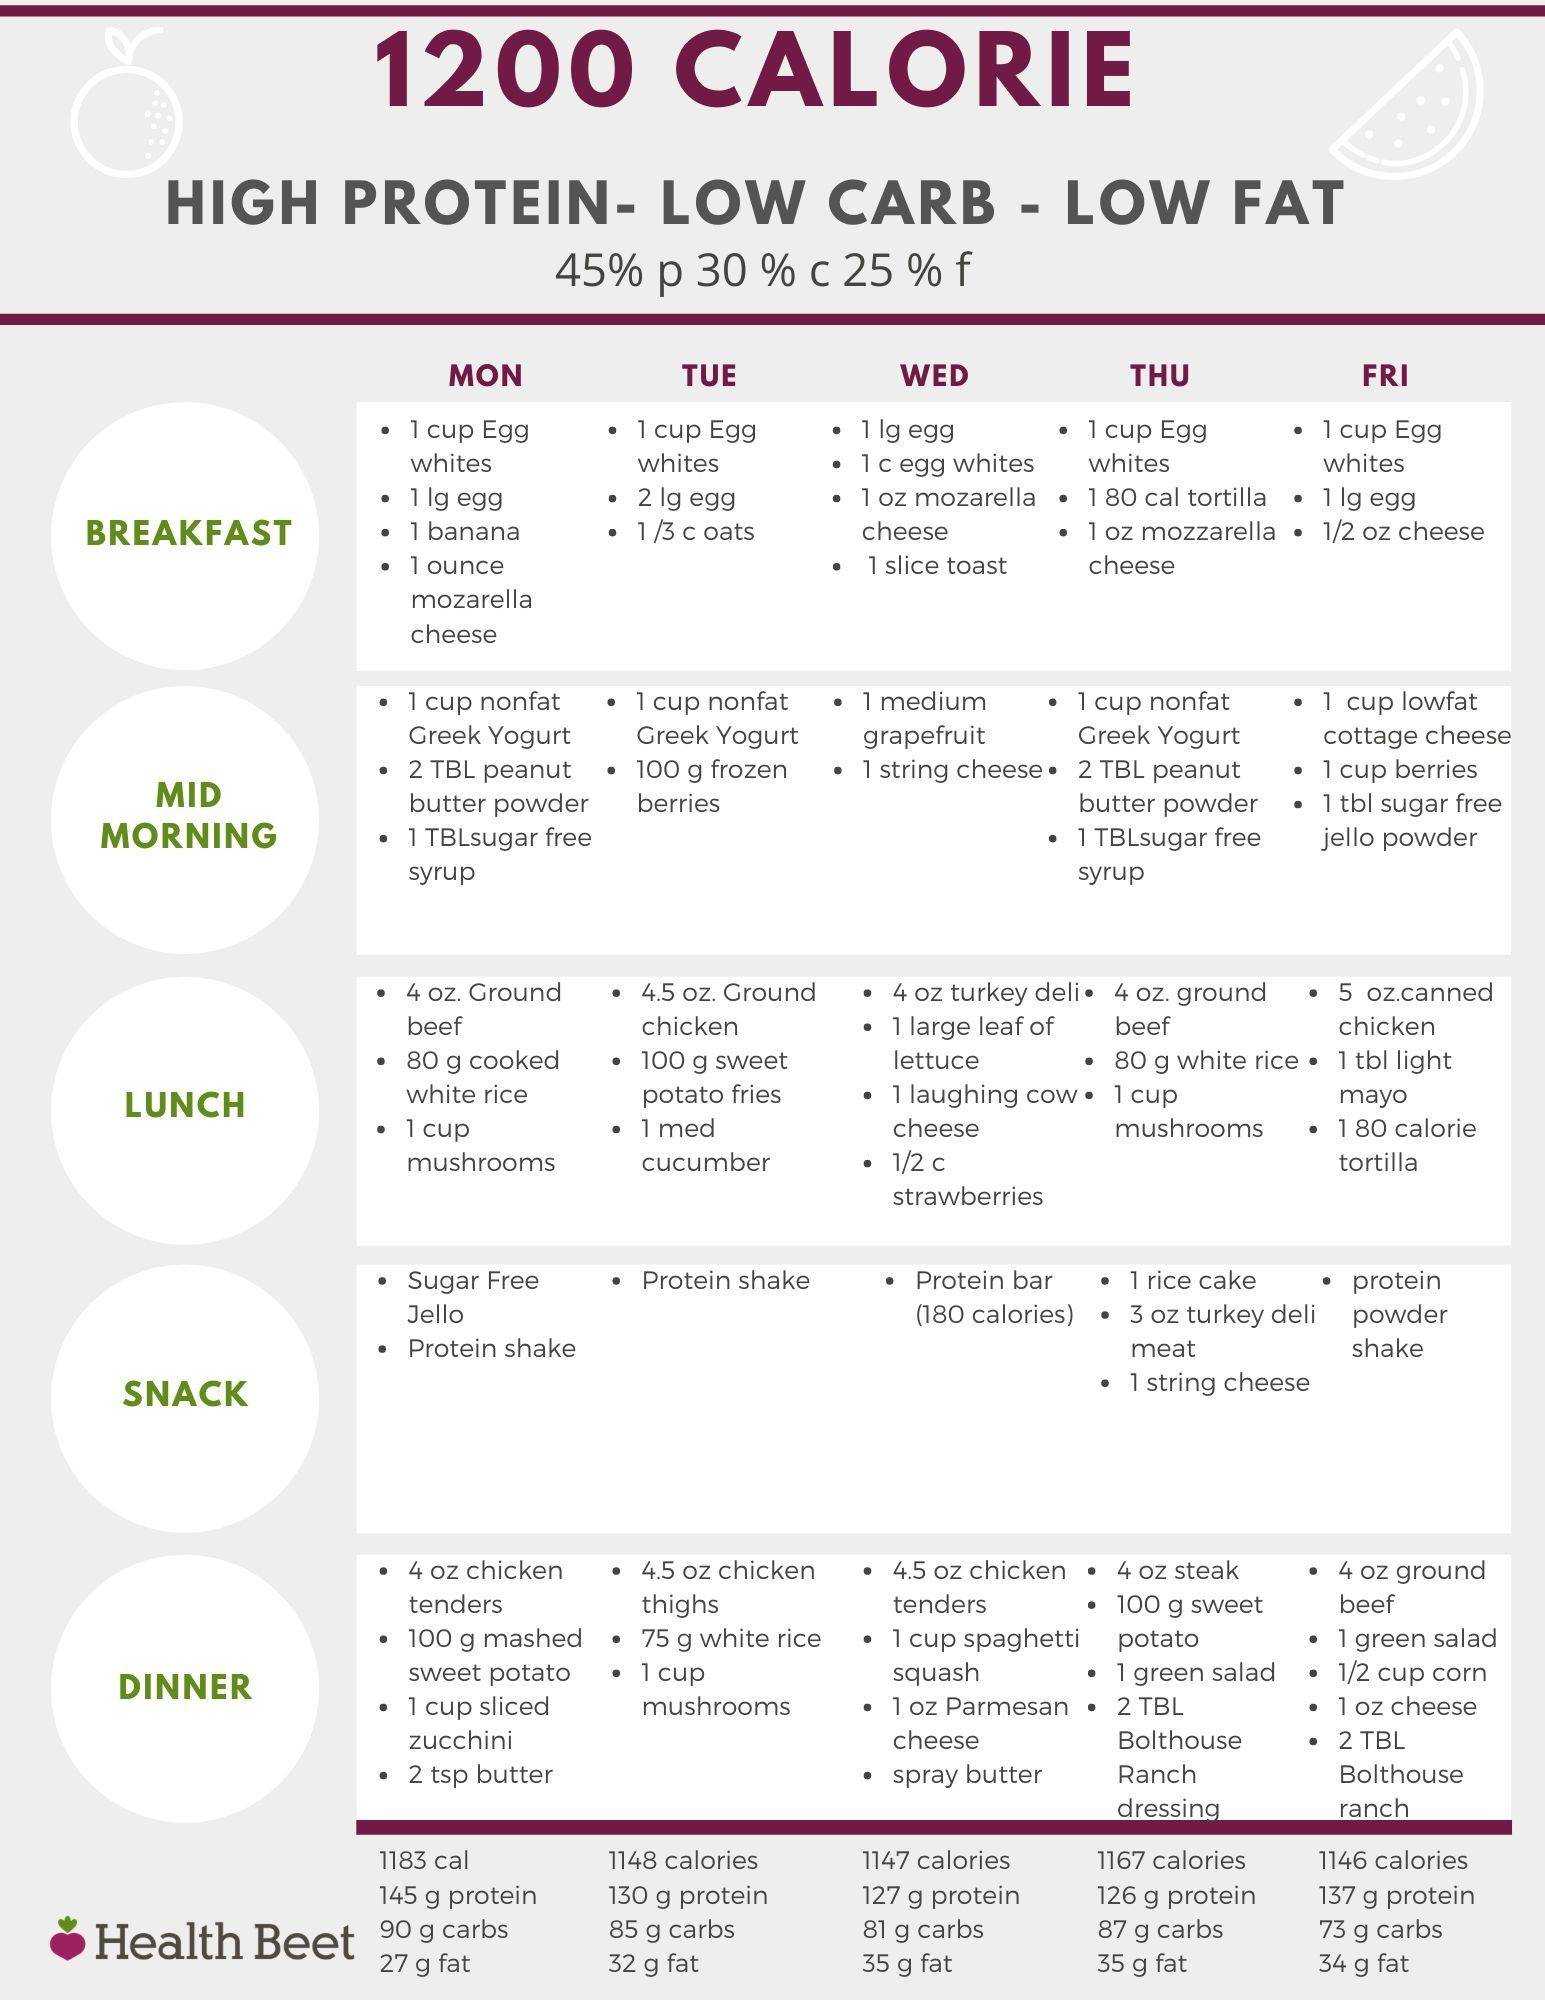 Безуглеводная и низкоуглеводная диета: плюсы и минусы, противопоказания